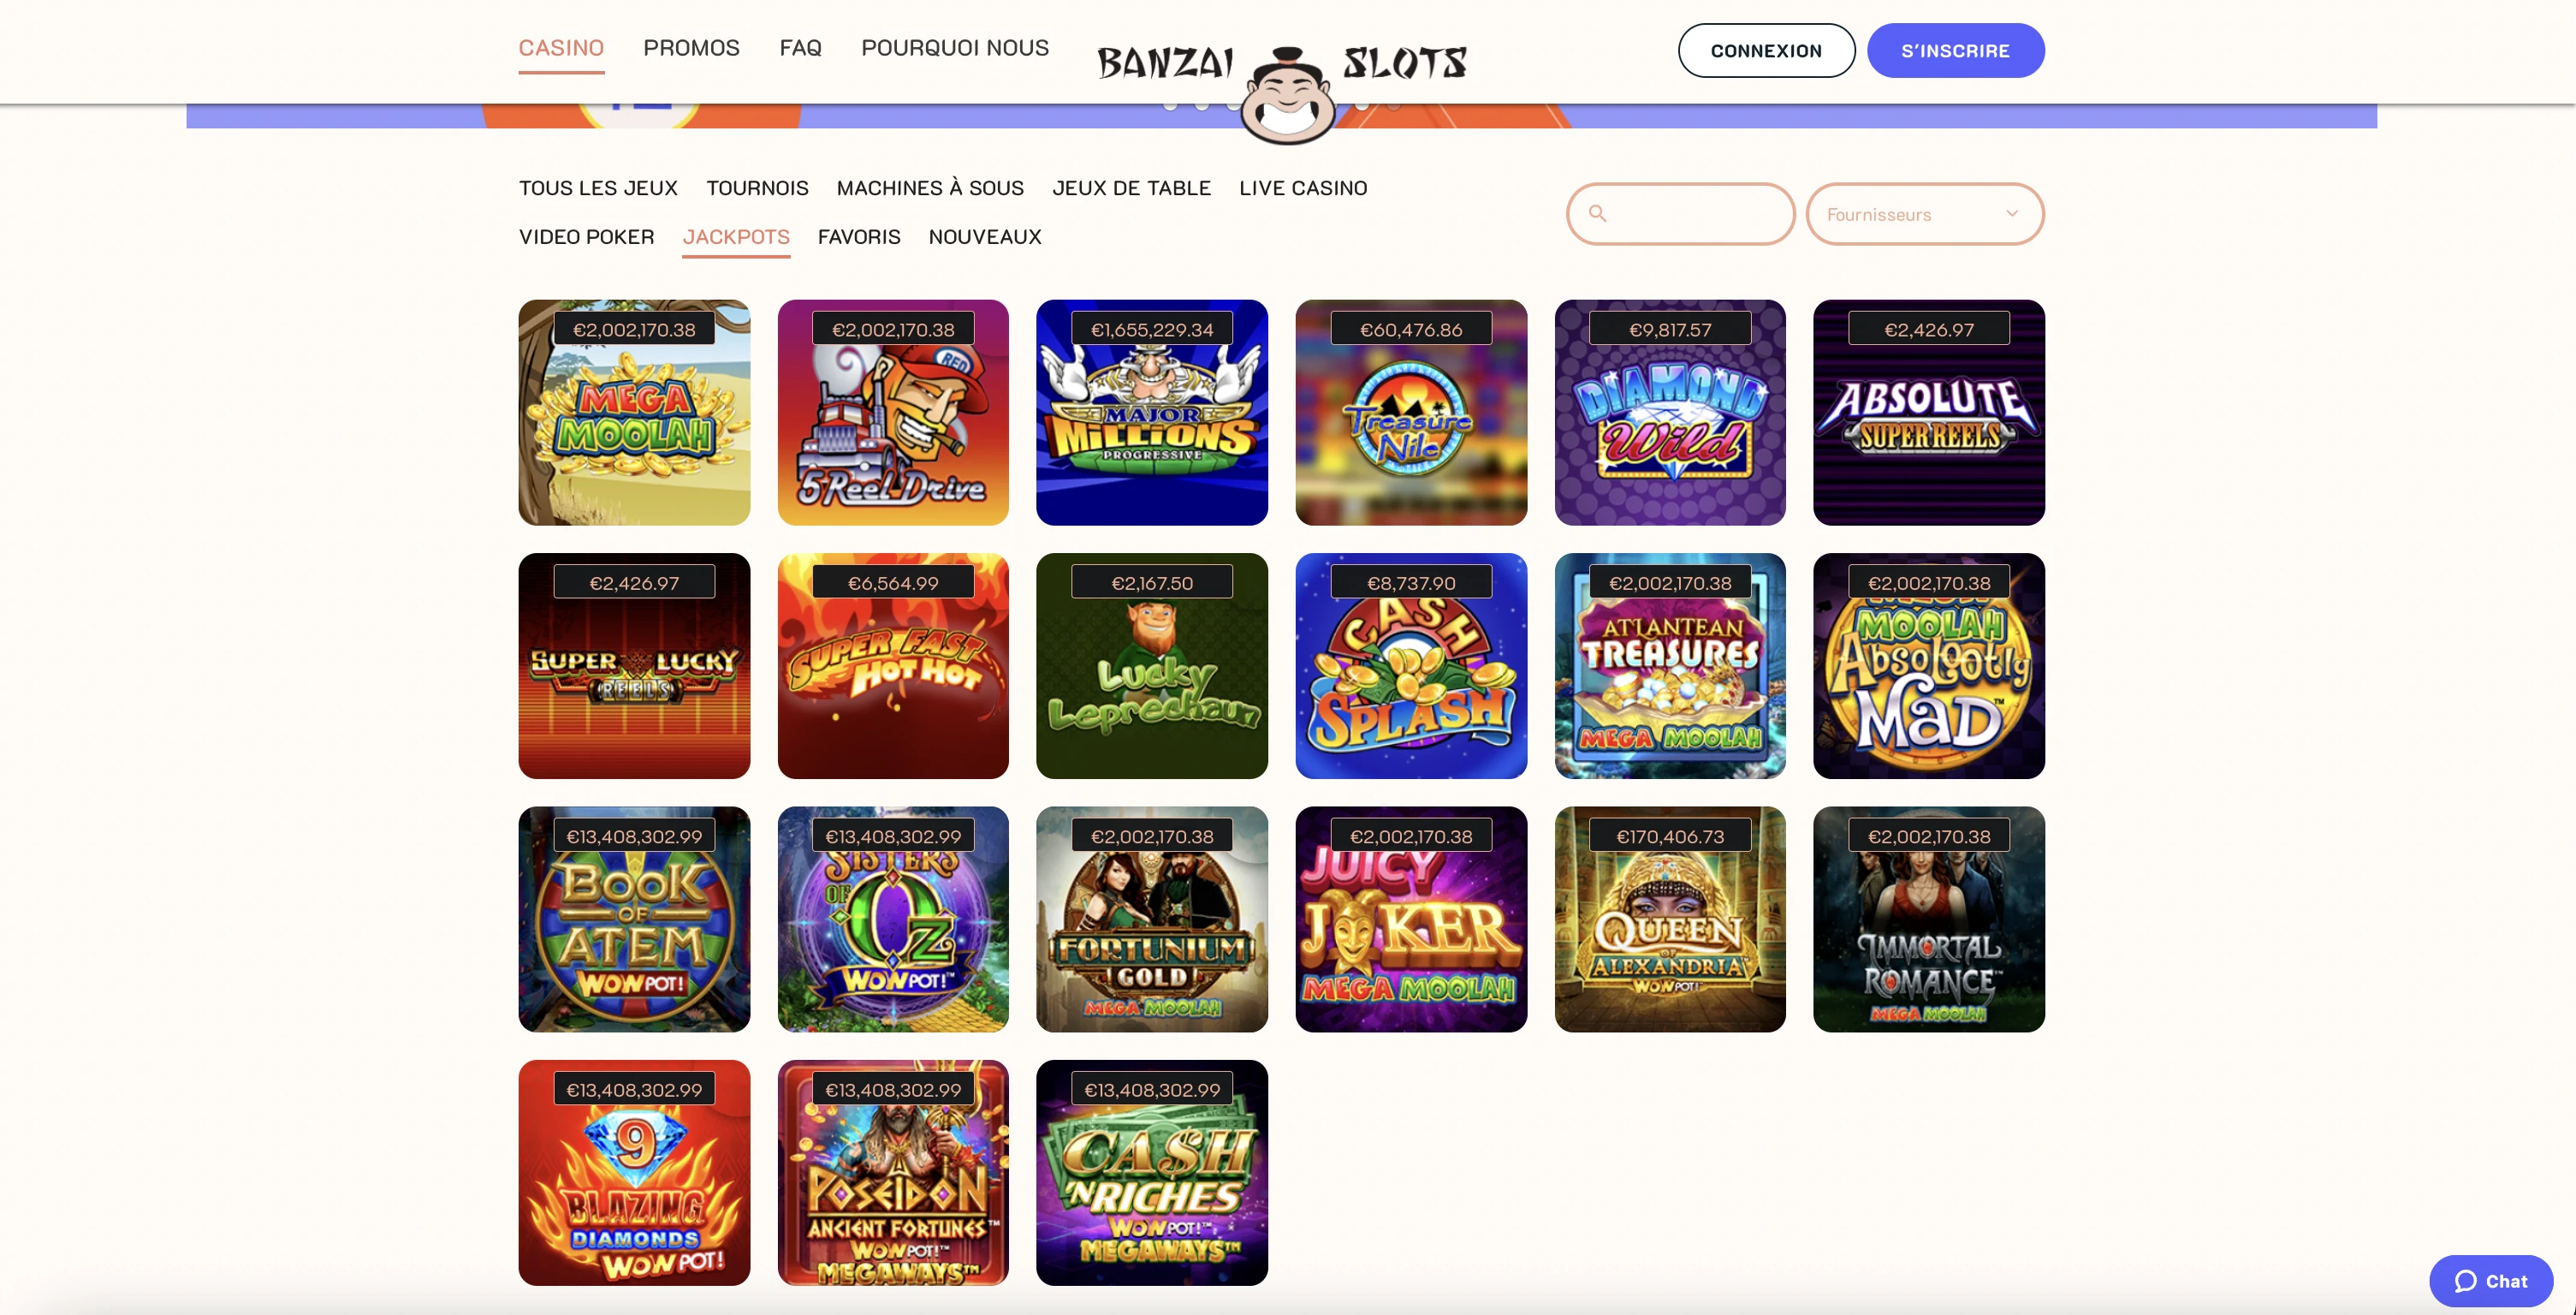 Le casino en ligne Banzai Slots met à votre disposition de nombreuses machines à sous à jackpot et à jackpot progressif